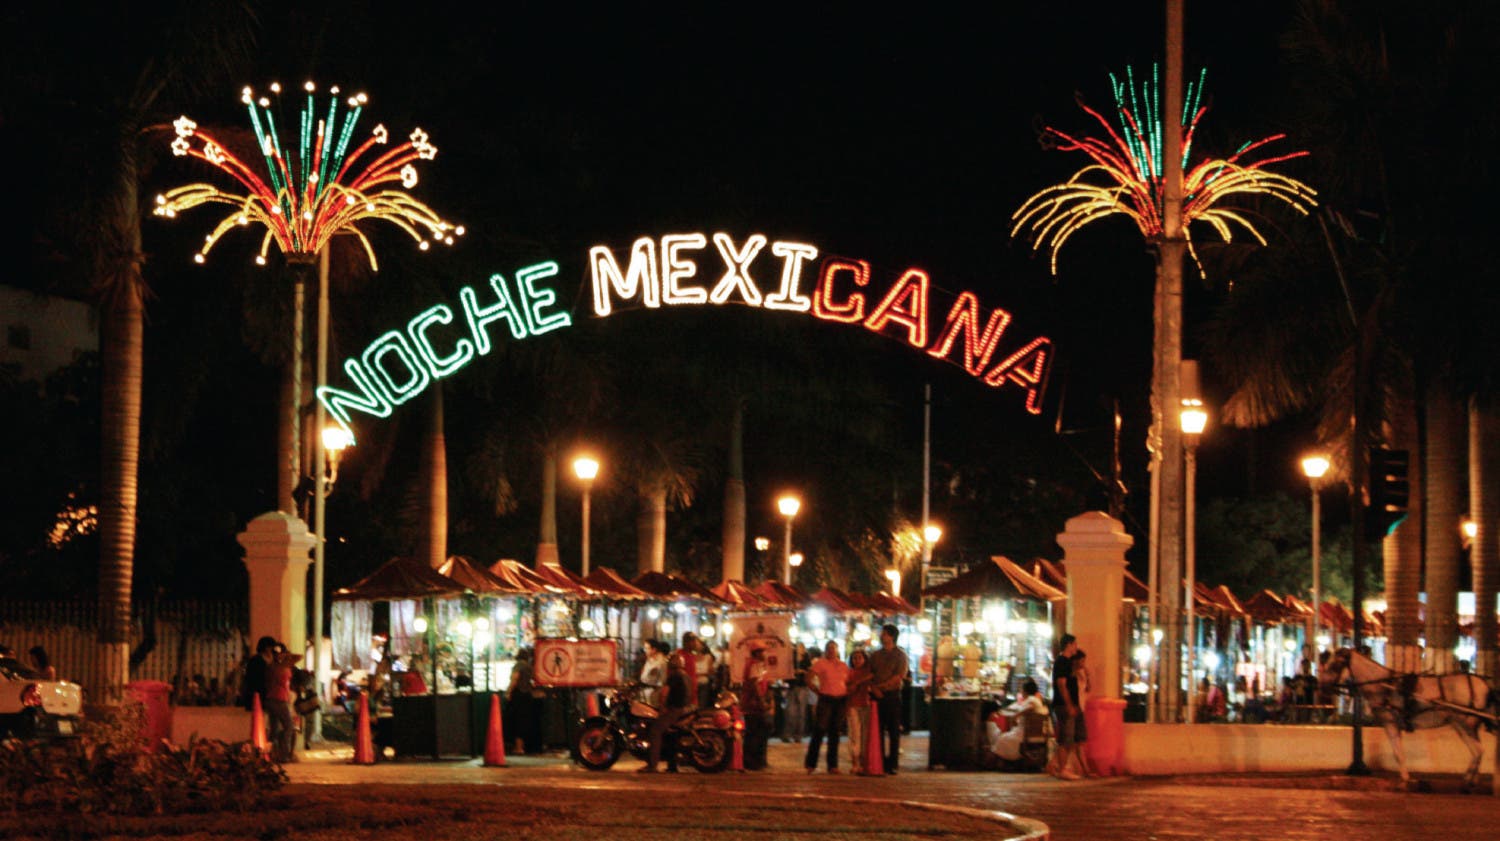 ¡Organiza la noche mexicana perfecta!